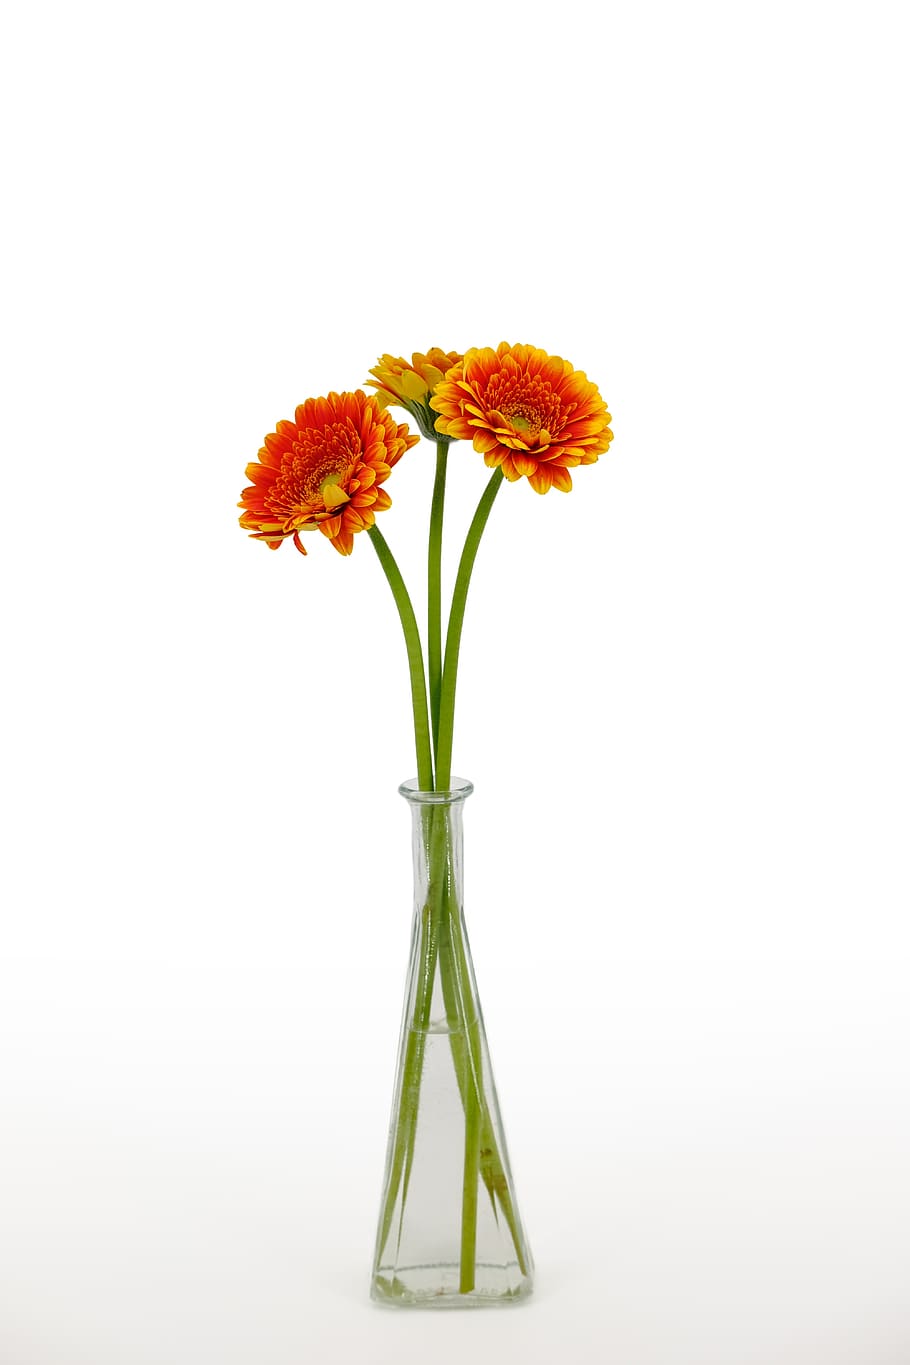 chrysanthemum, bouquet, flowers, bloom, vase, flower vase, bottle, vascular, flowering plant, flower